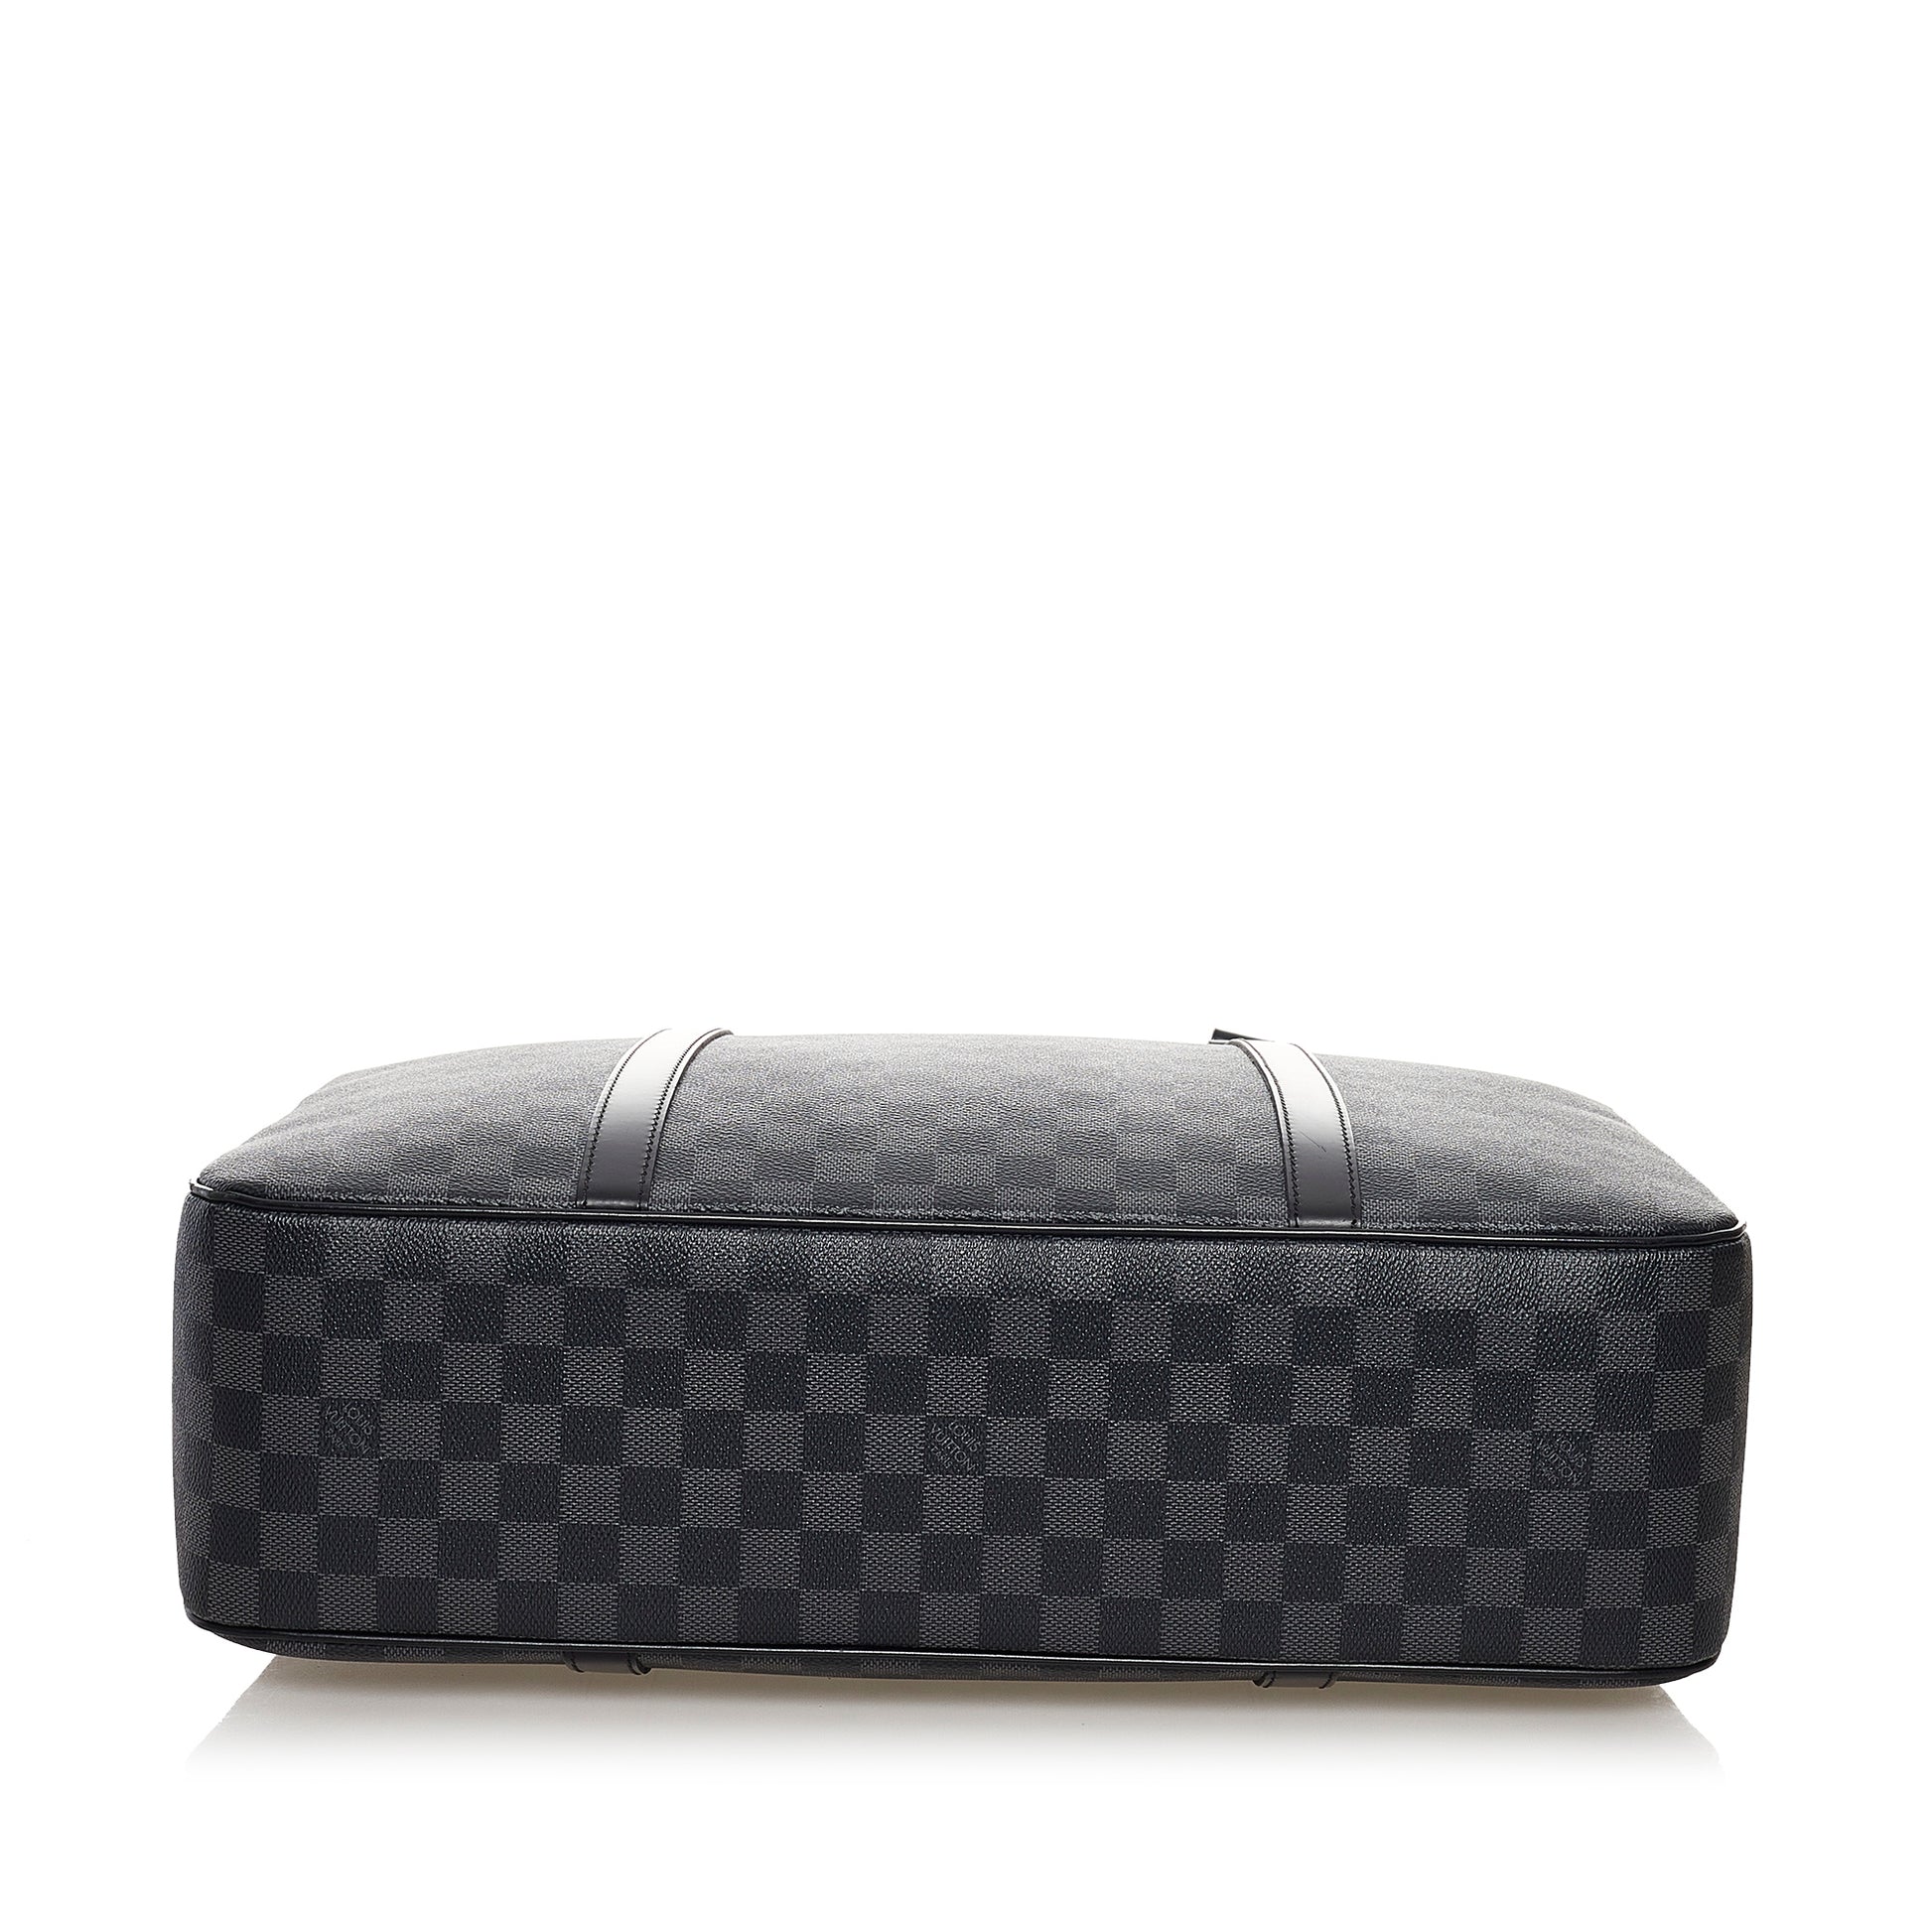 Louis Vuitton Jorn Damier Graphite Canvas Top Handle Bag on SALE